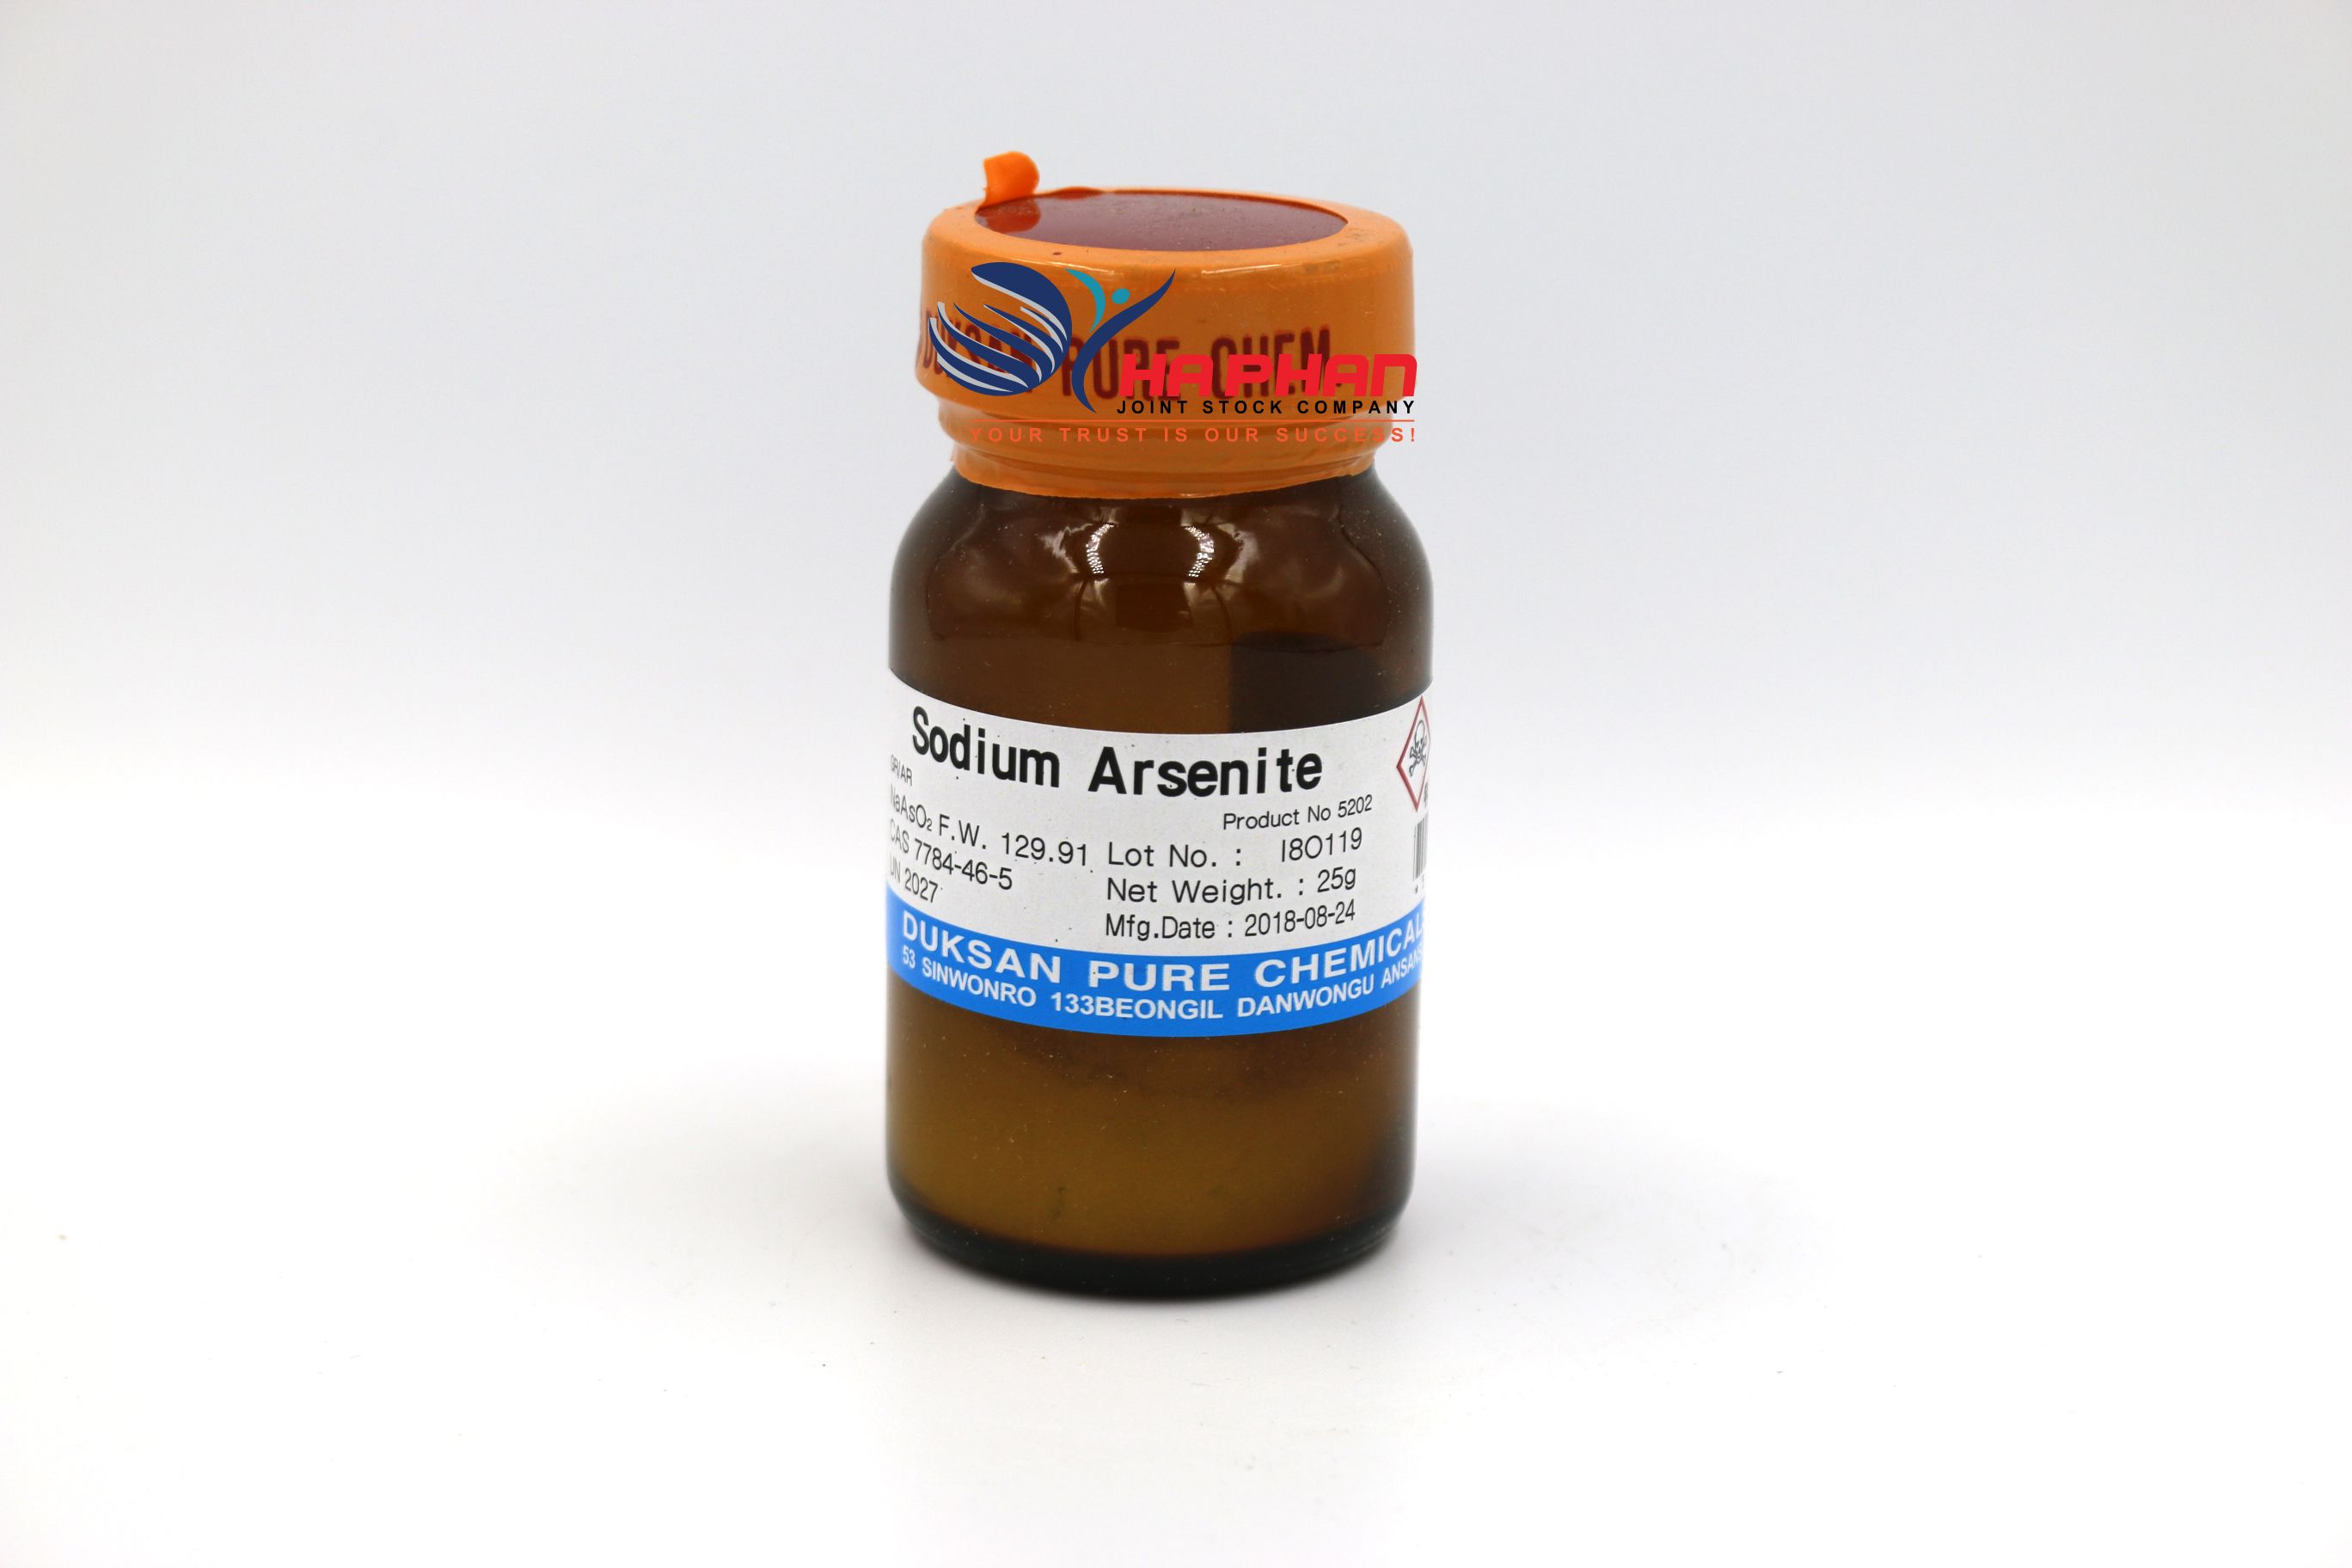 Sodium Arsenite